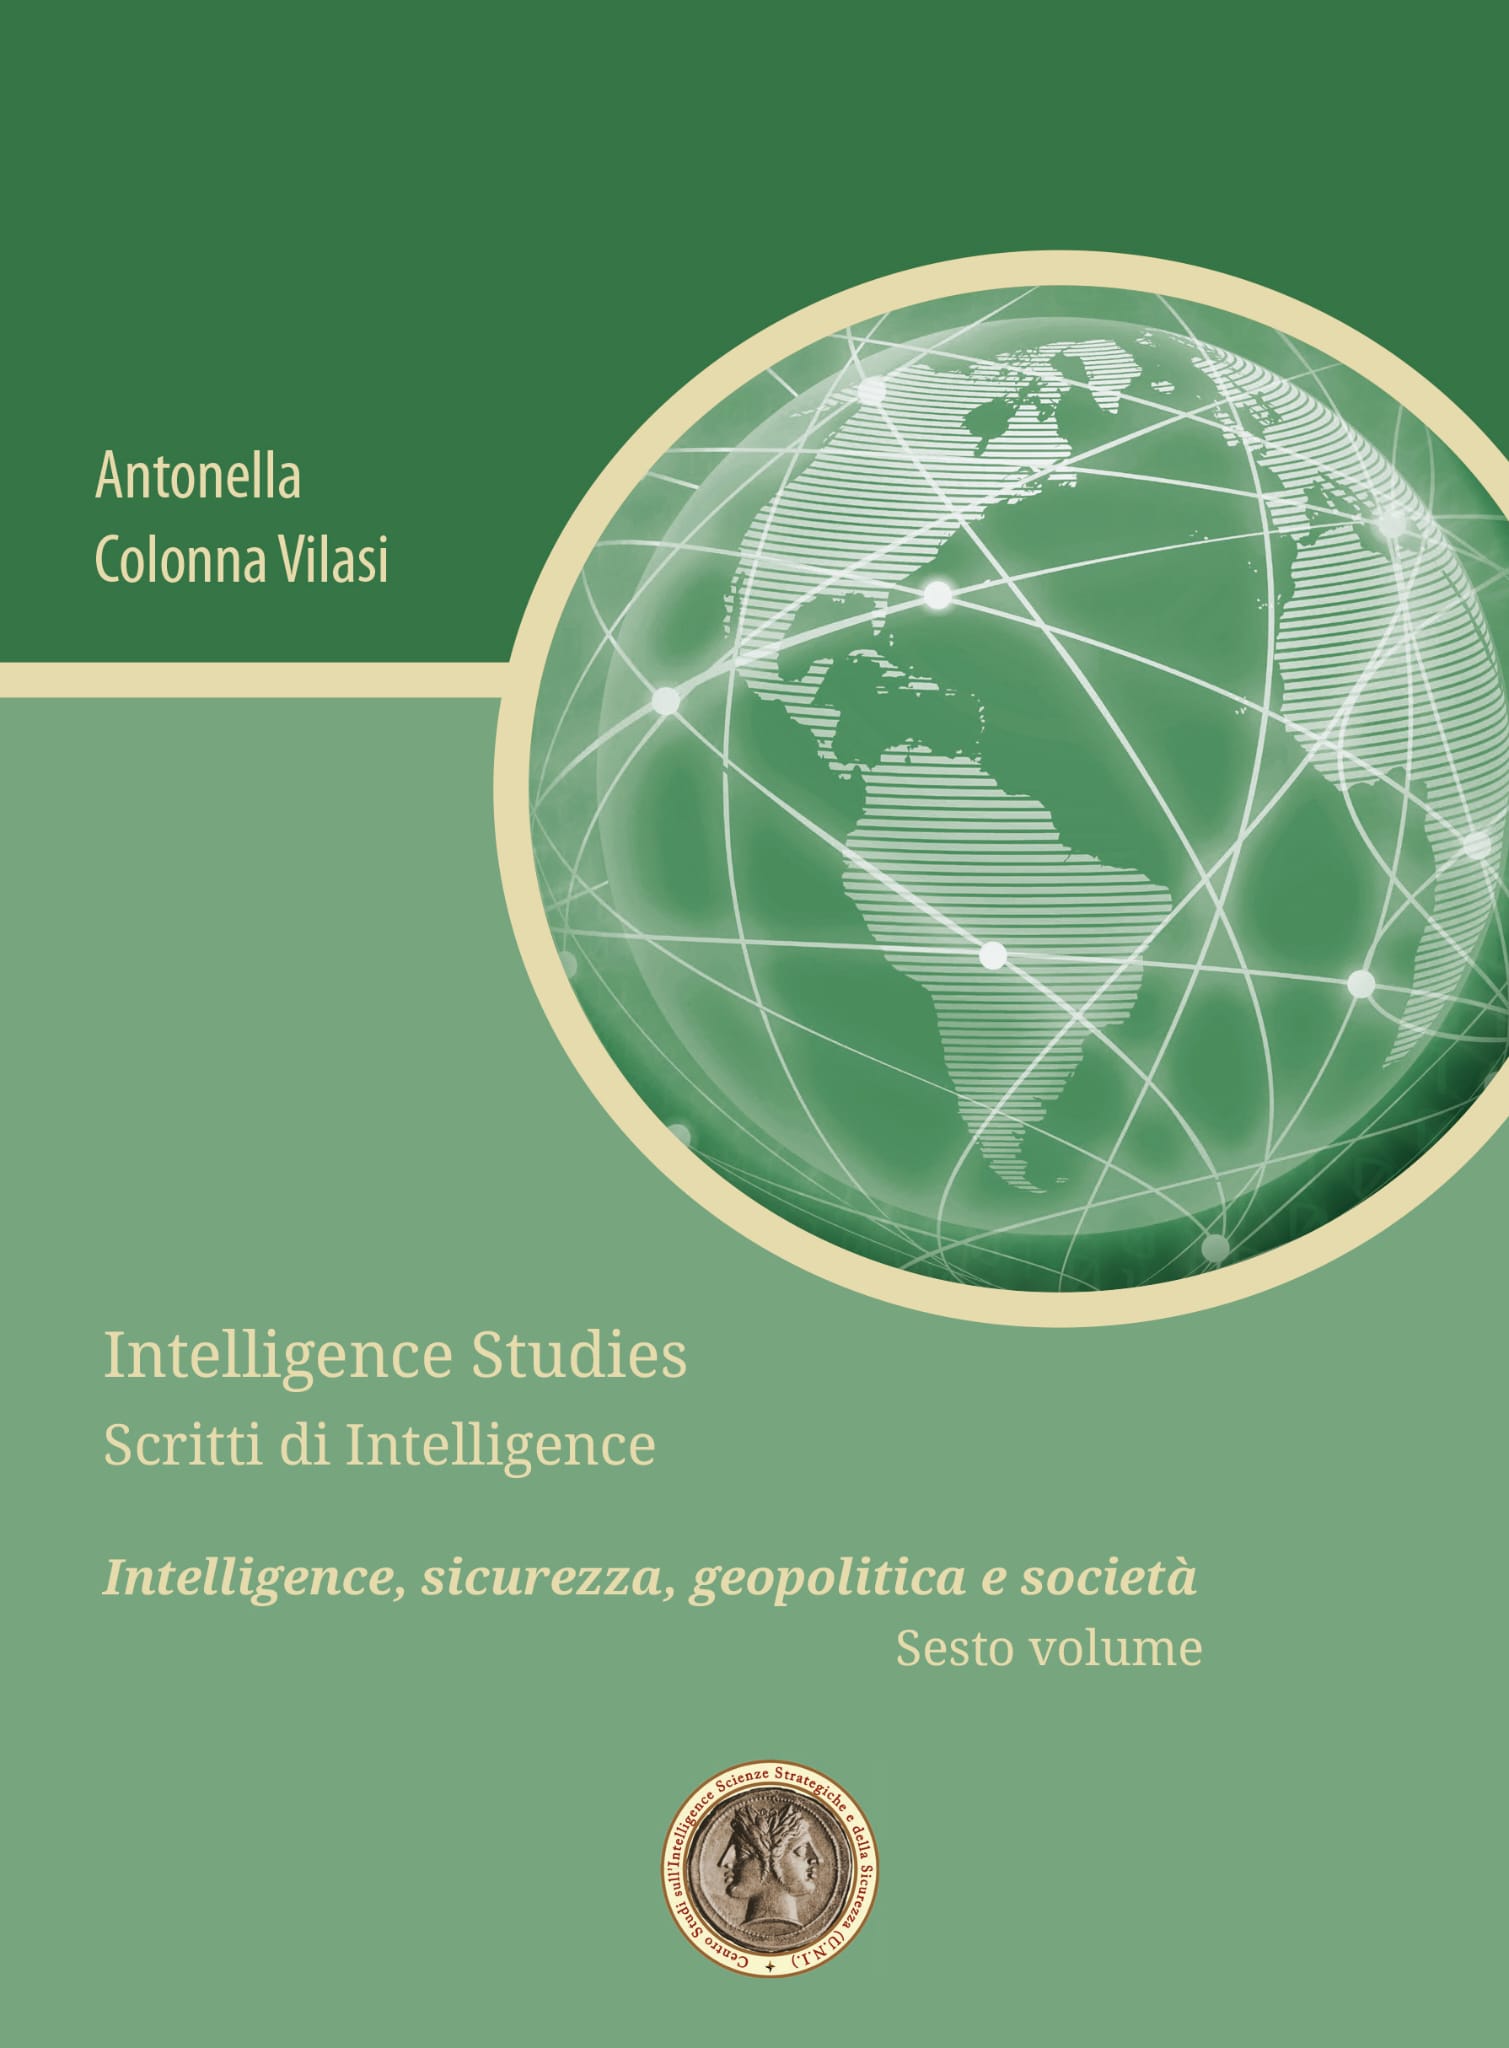 Pubblicato il sesto volume della collana Studi di intelligence